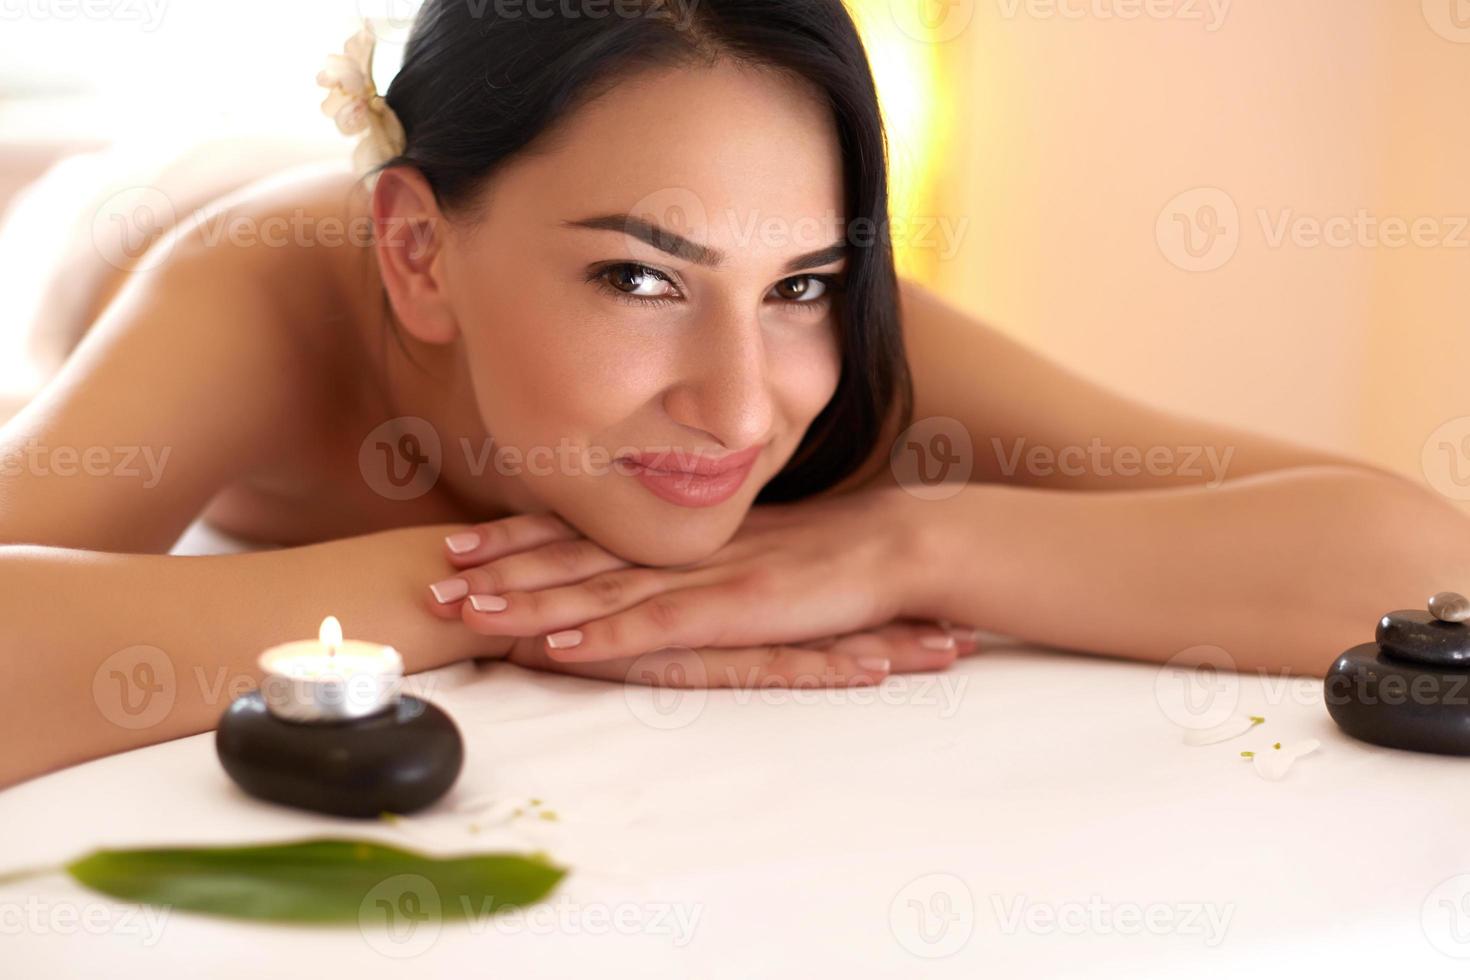 massagem spa. morena linda recebe tratamento de spa no salão. foto